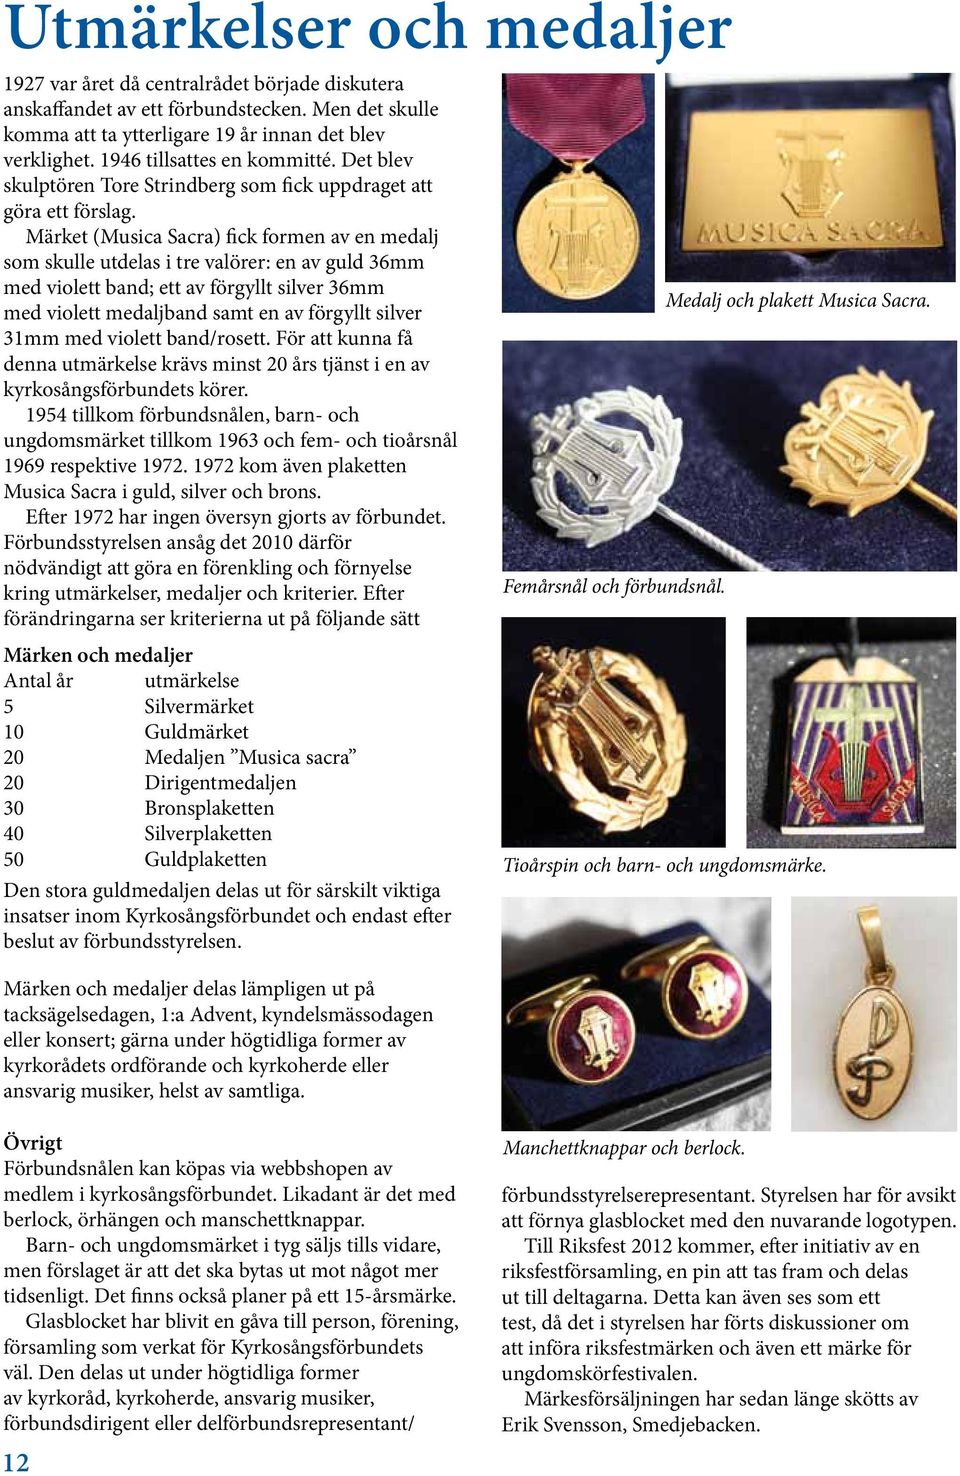 Märket (Musica Sacra) fick formen av en medalj som skulle utdelas i tre valörer: en av guld 36mm med violett band; ett av förgyllt silver 36mm med violett medaljband samt en av förgyllt silver 31mm